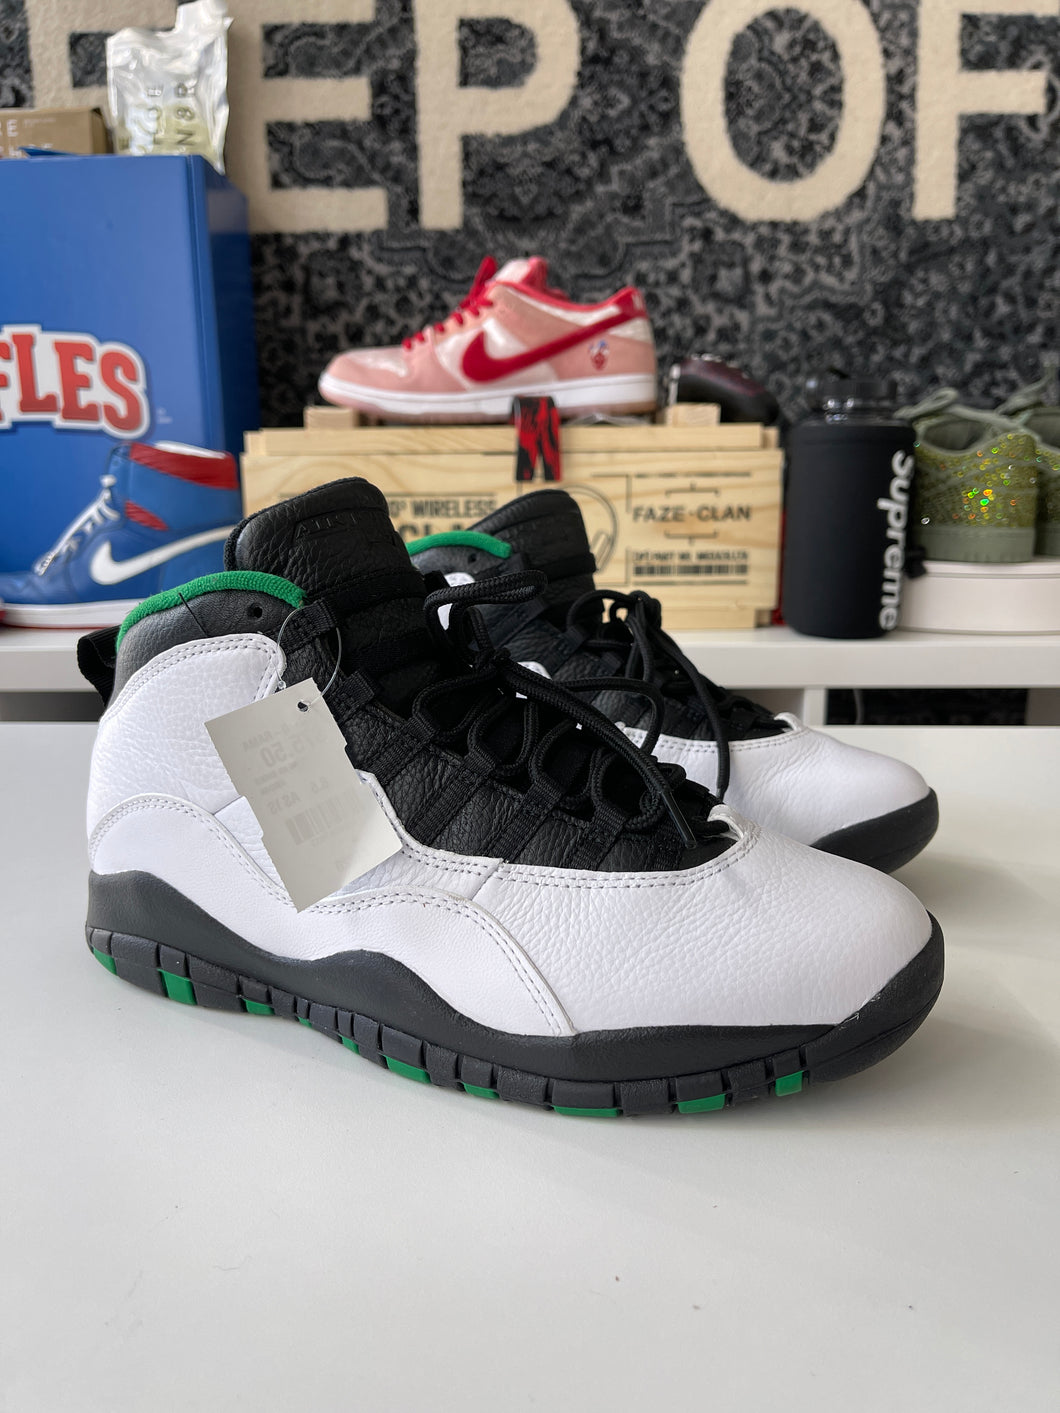 Nike Air Jordan 10 Sz 8.5 No Box